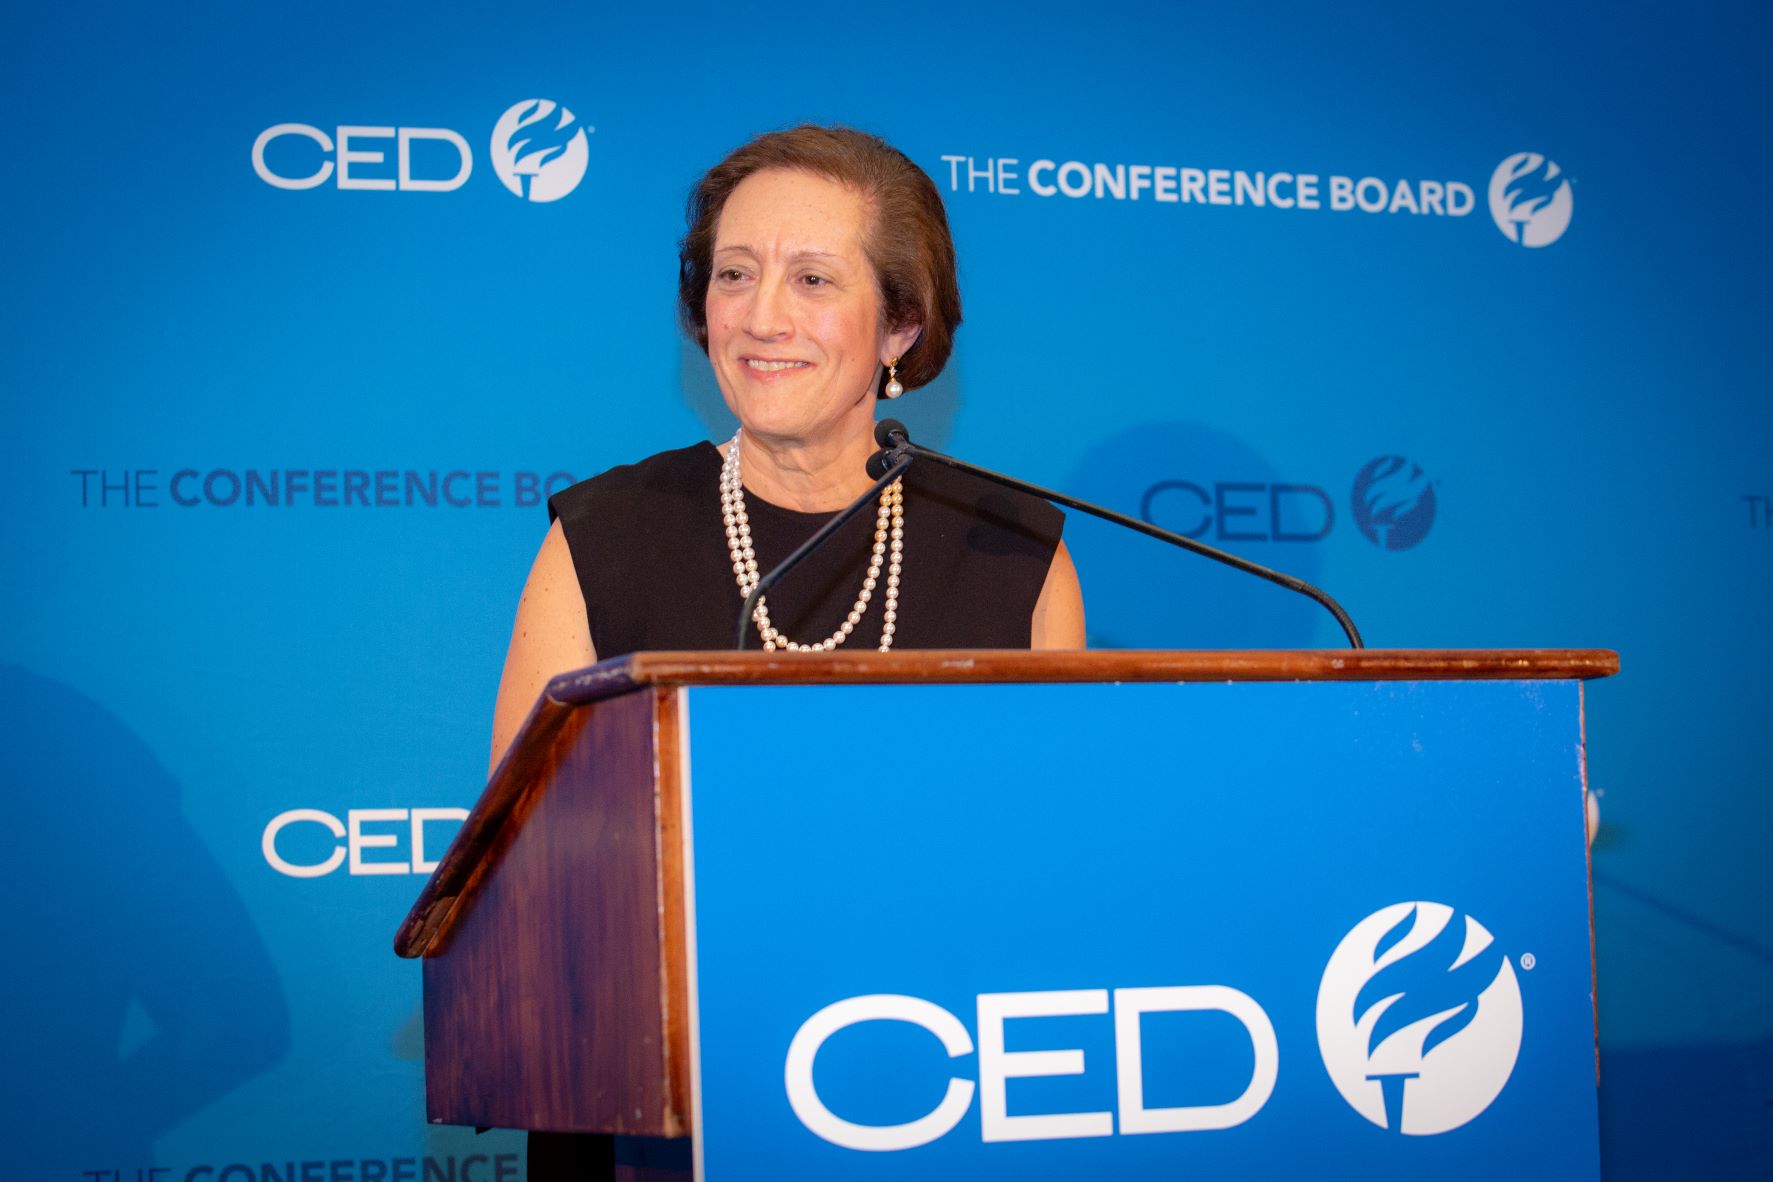 Judy CED acceptance speech